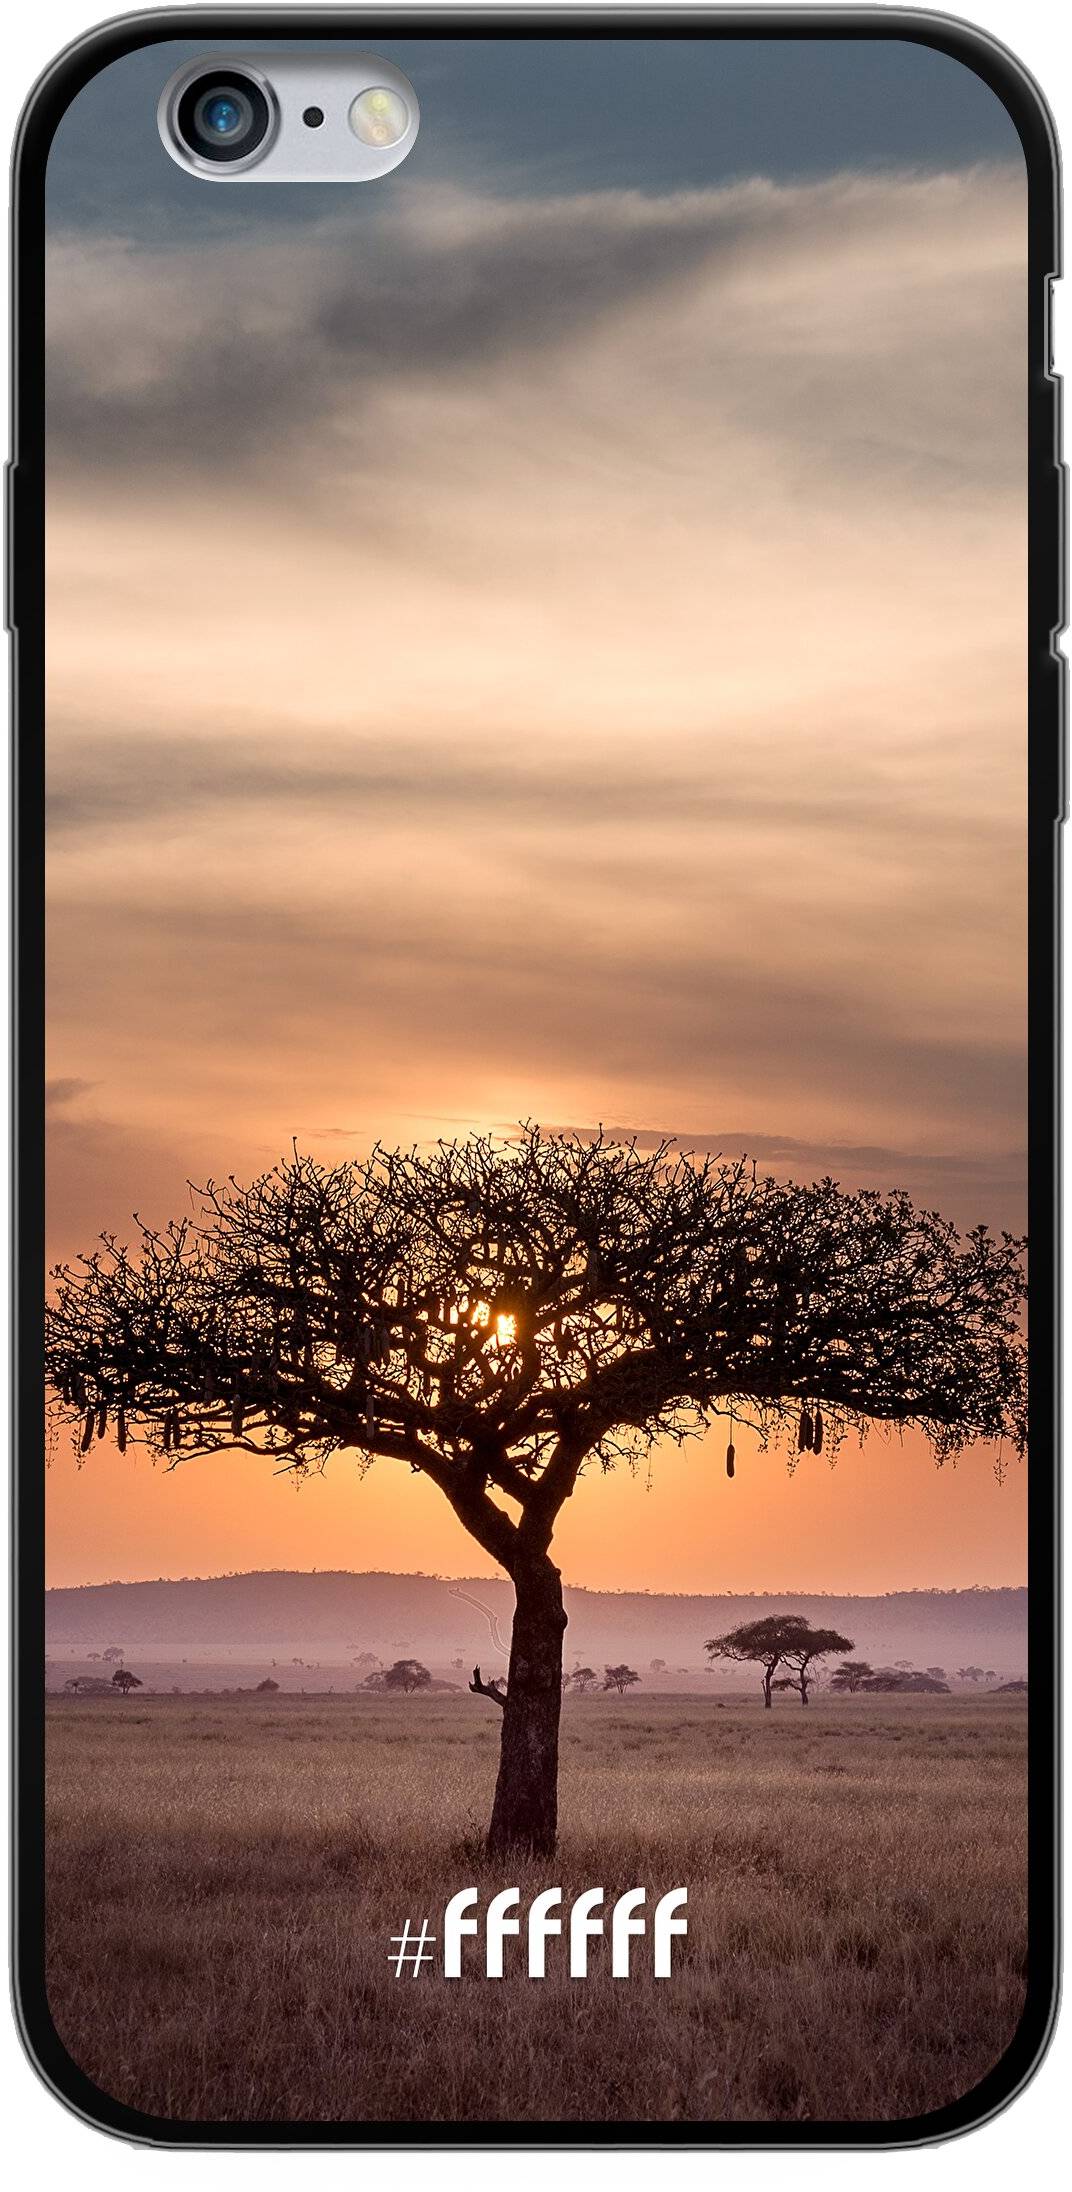 Tanzania iPhone 6